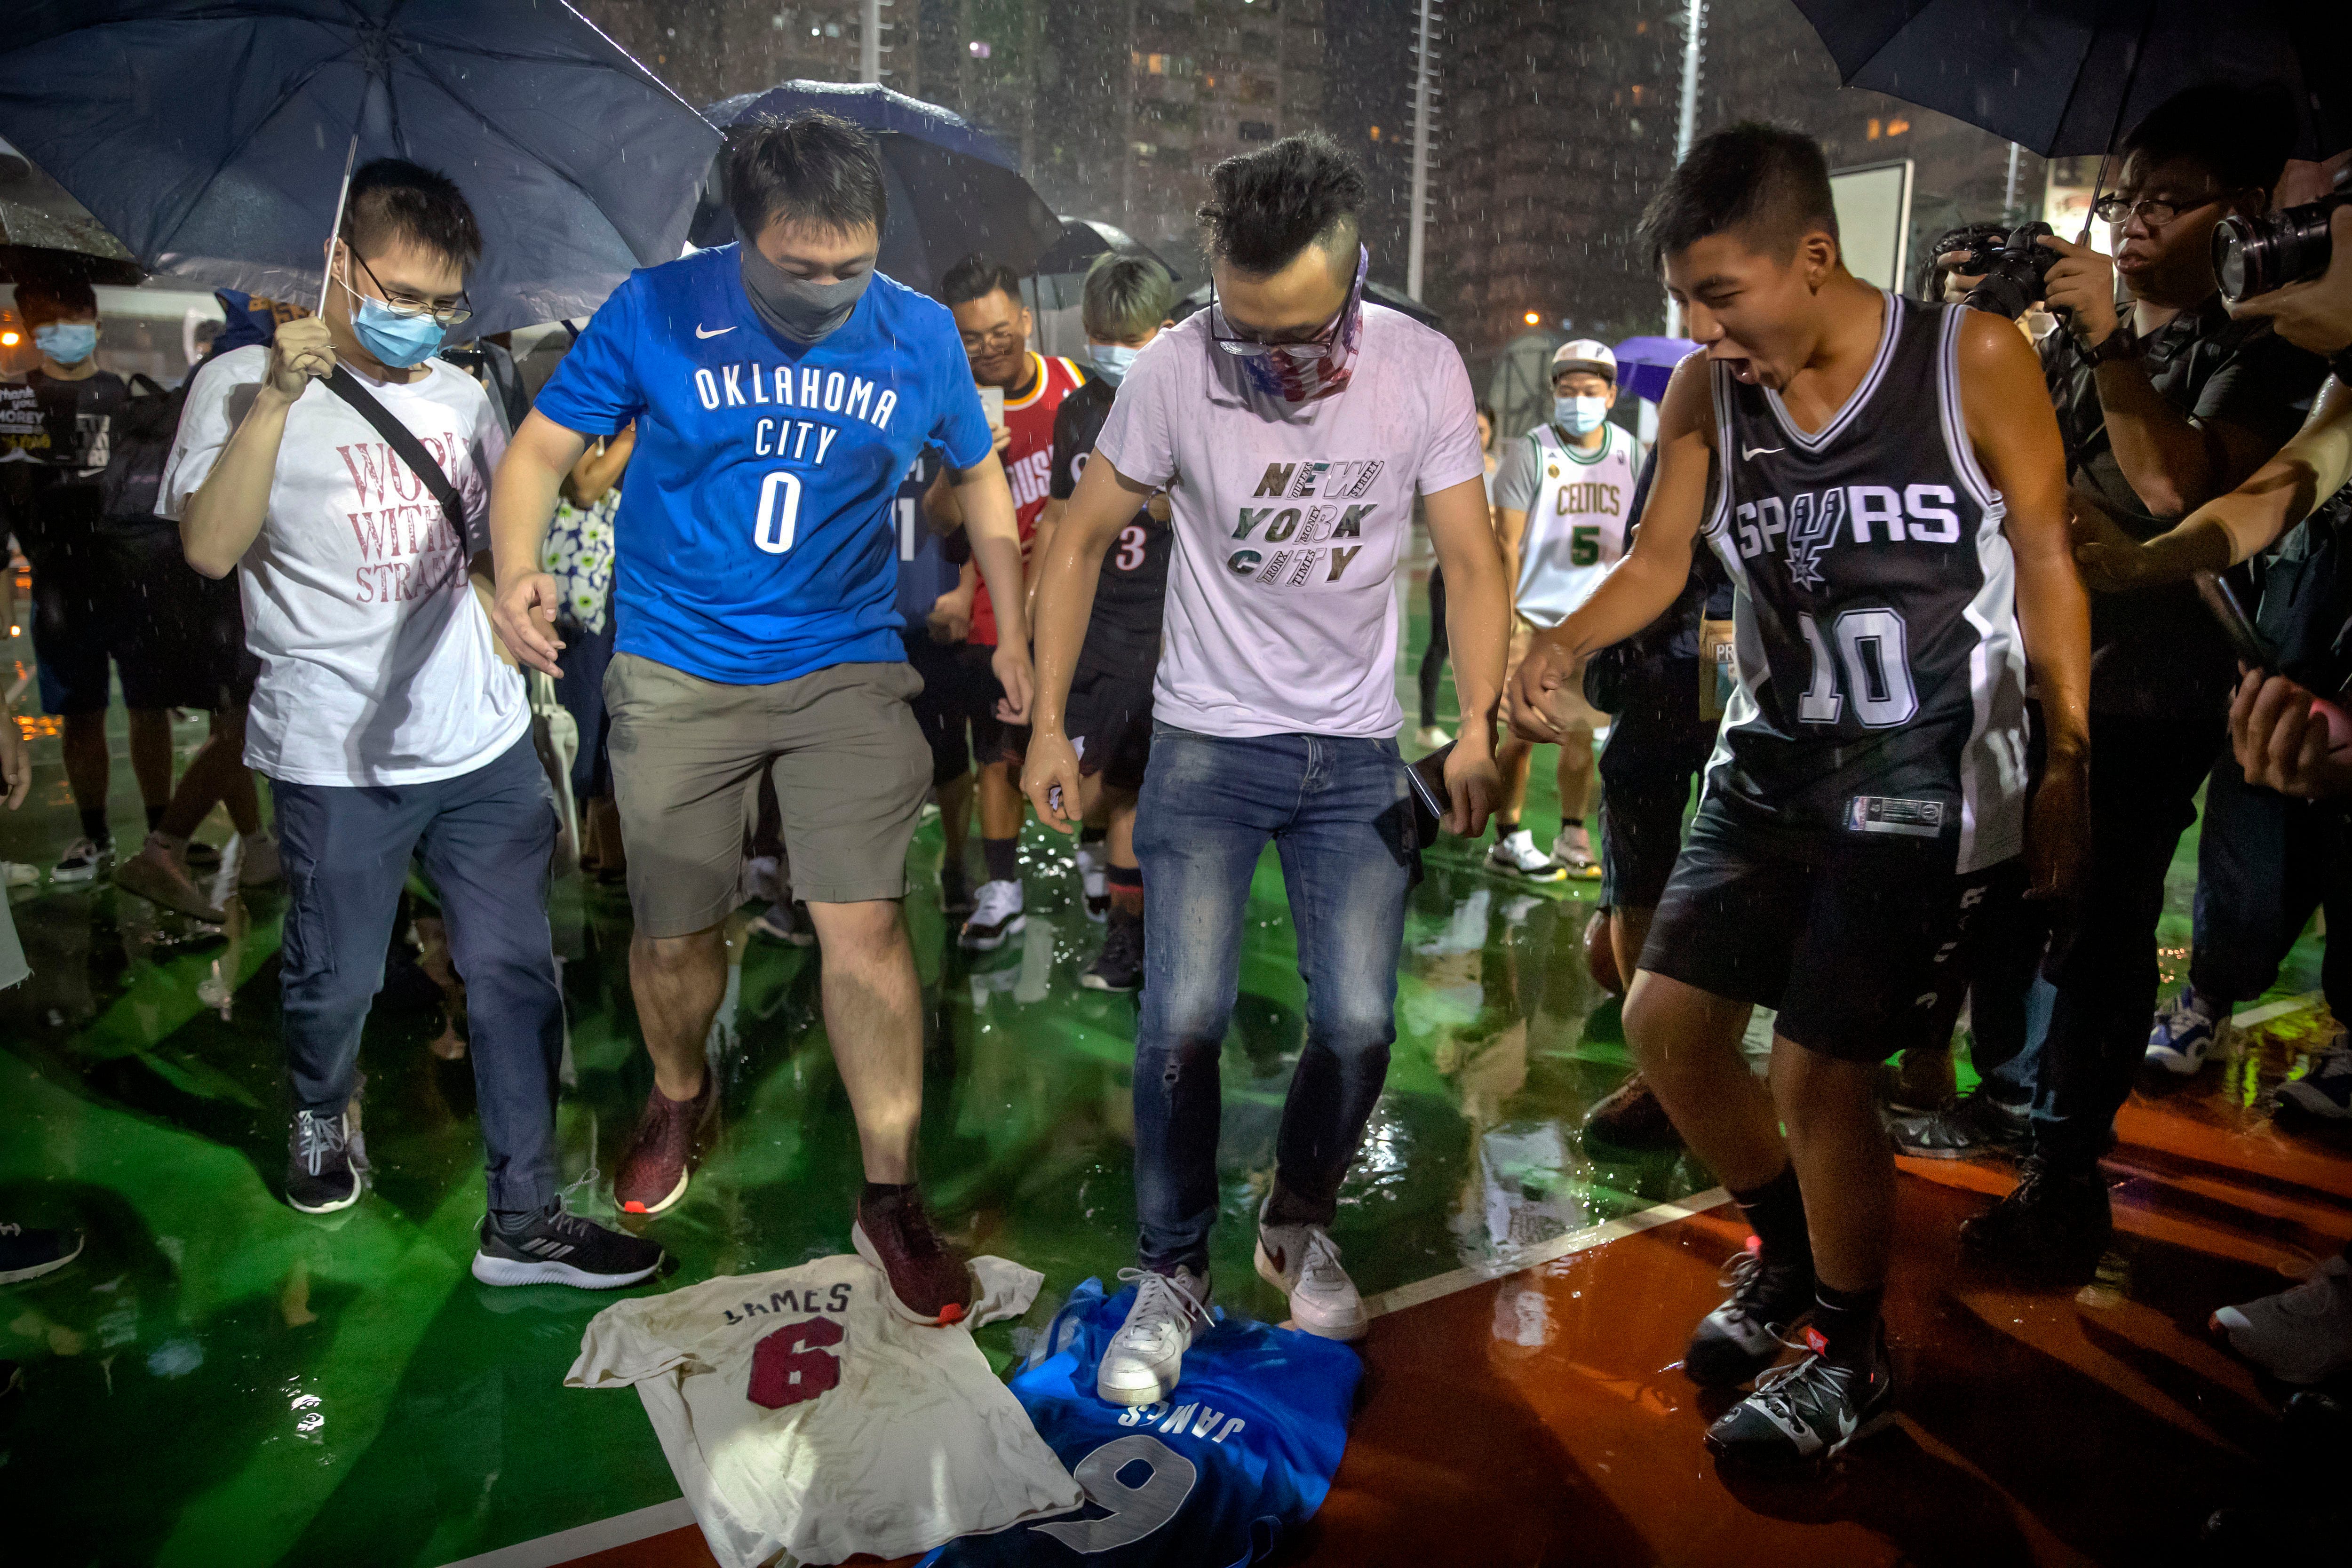 Hong Kong protesters burn jersey